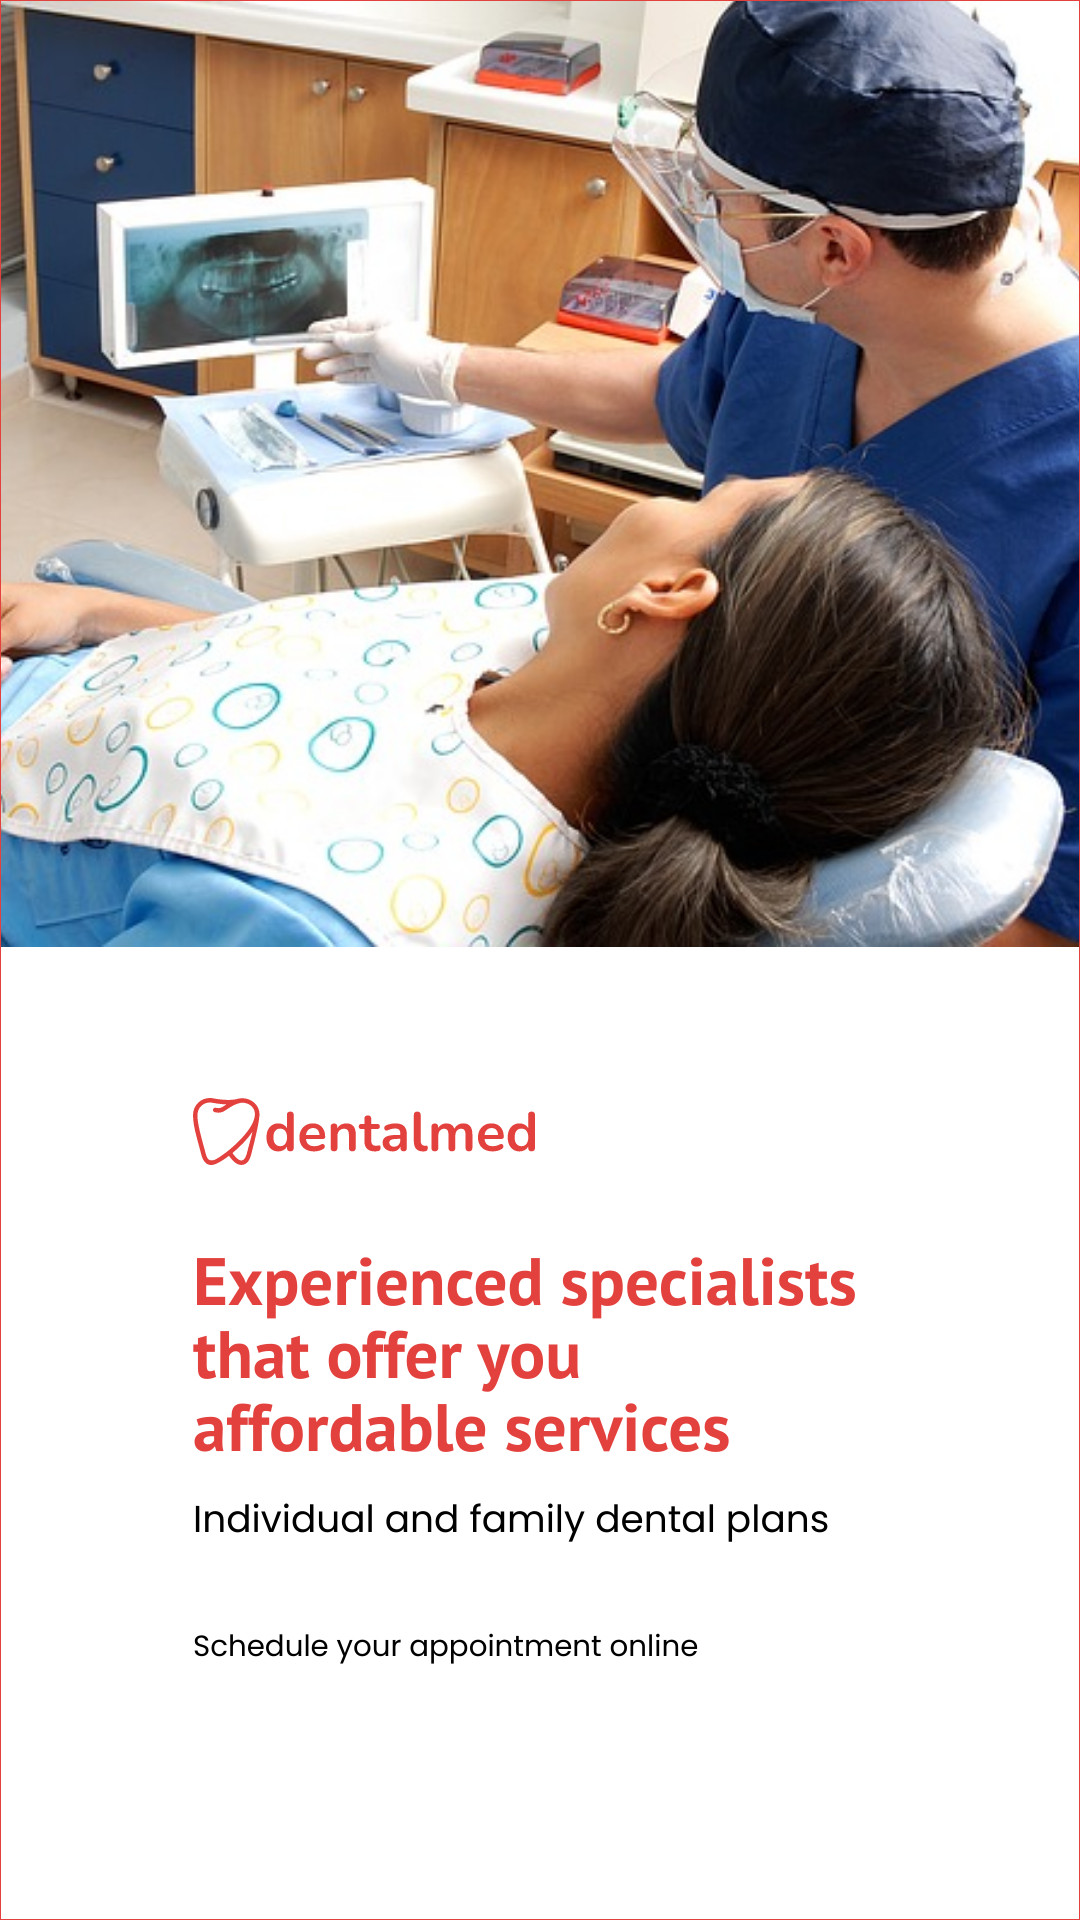 Affordable Dental Service Plans